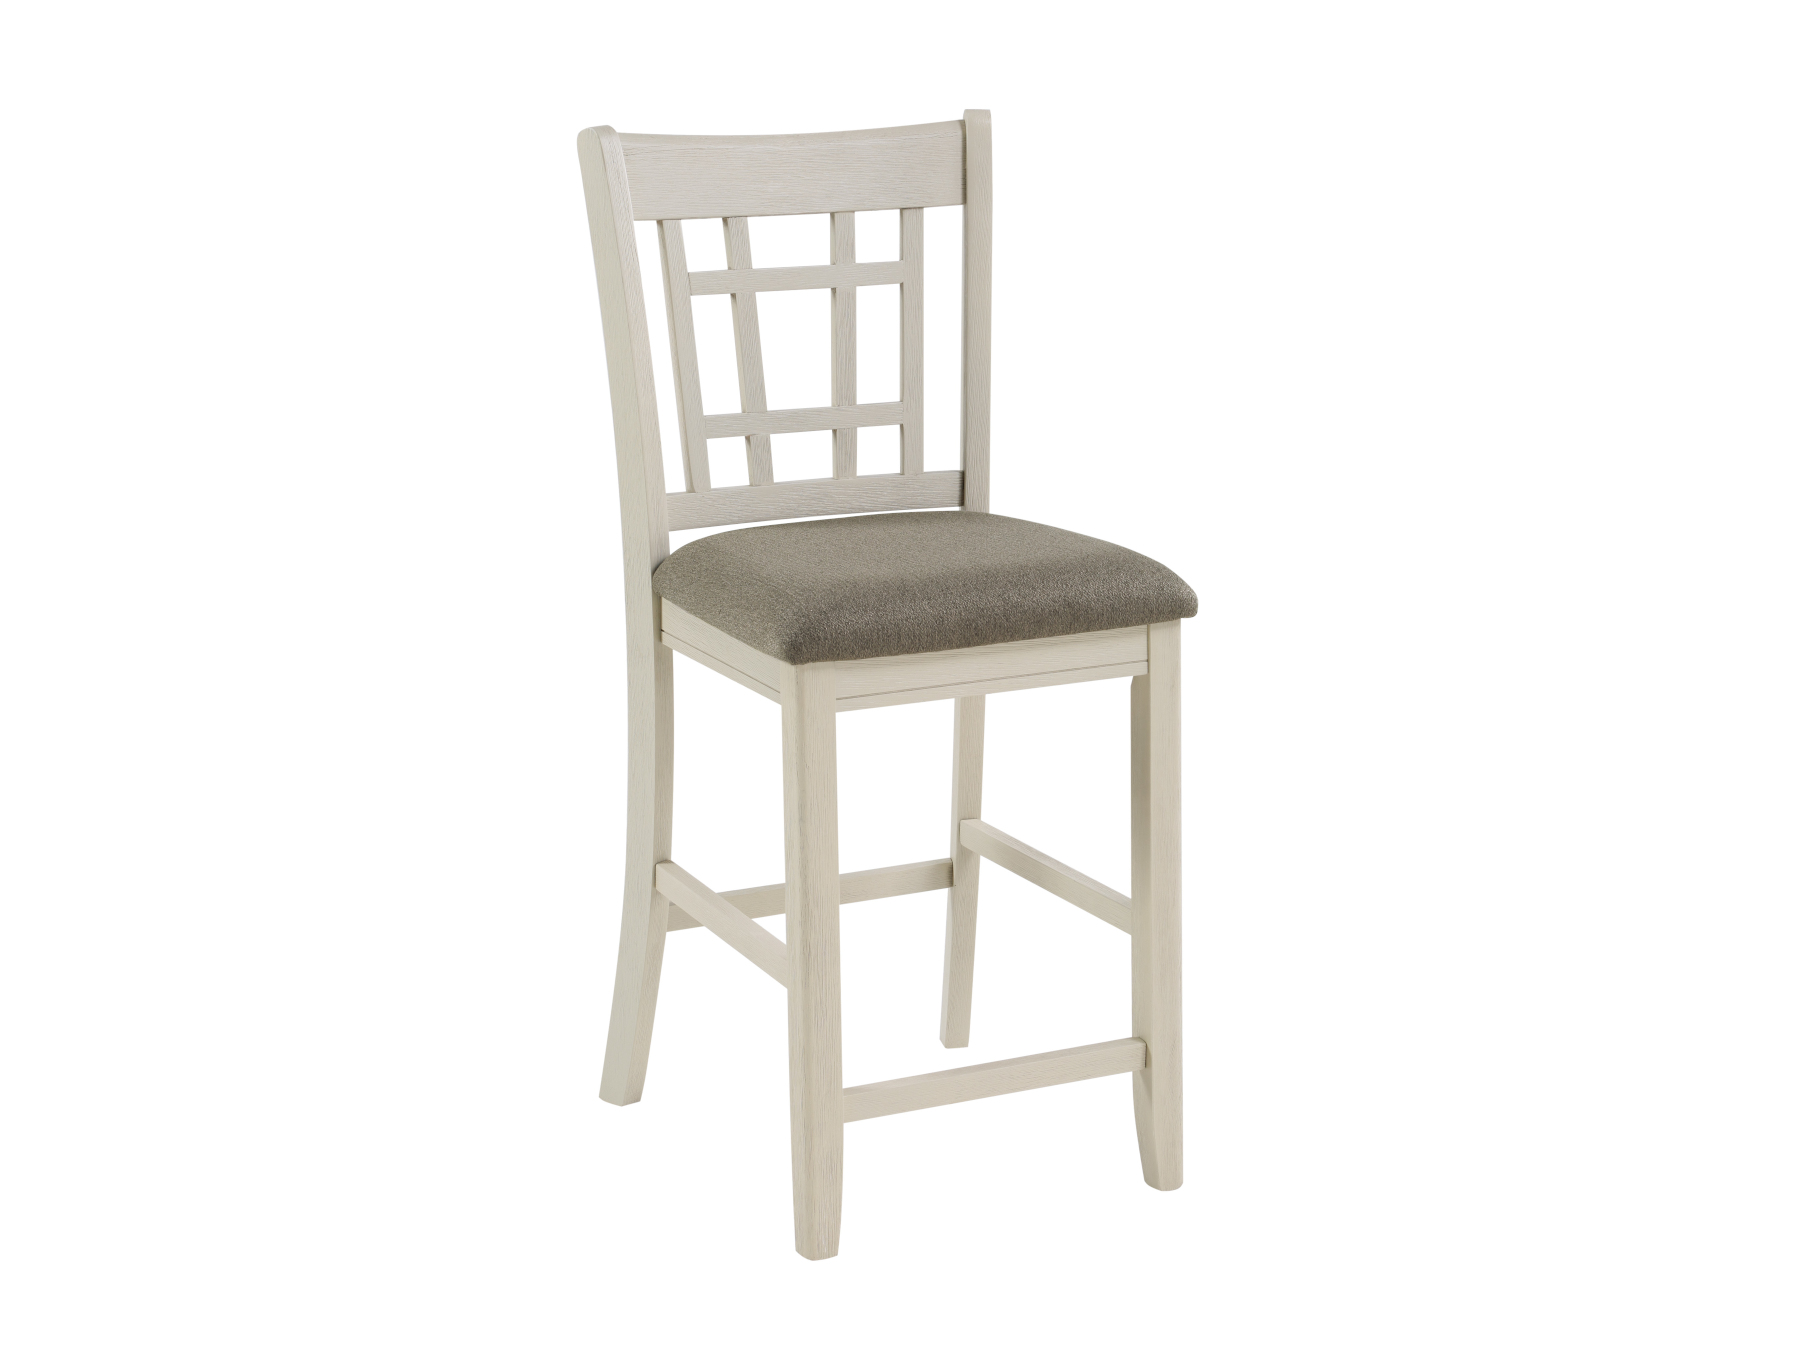 25493 - stool - MF-2423 - white